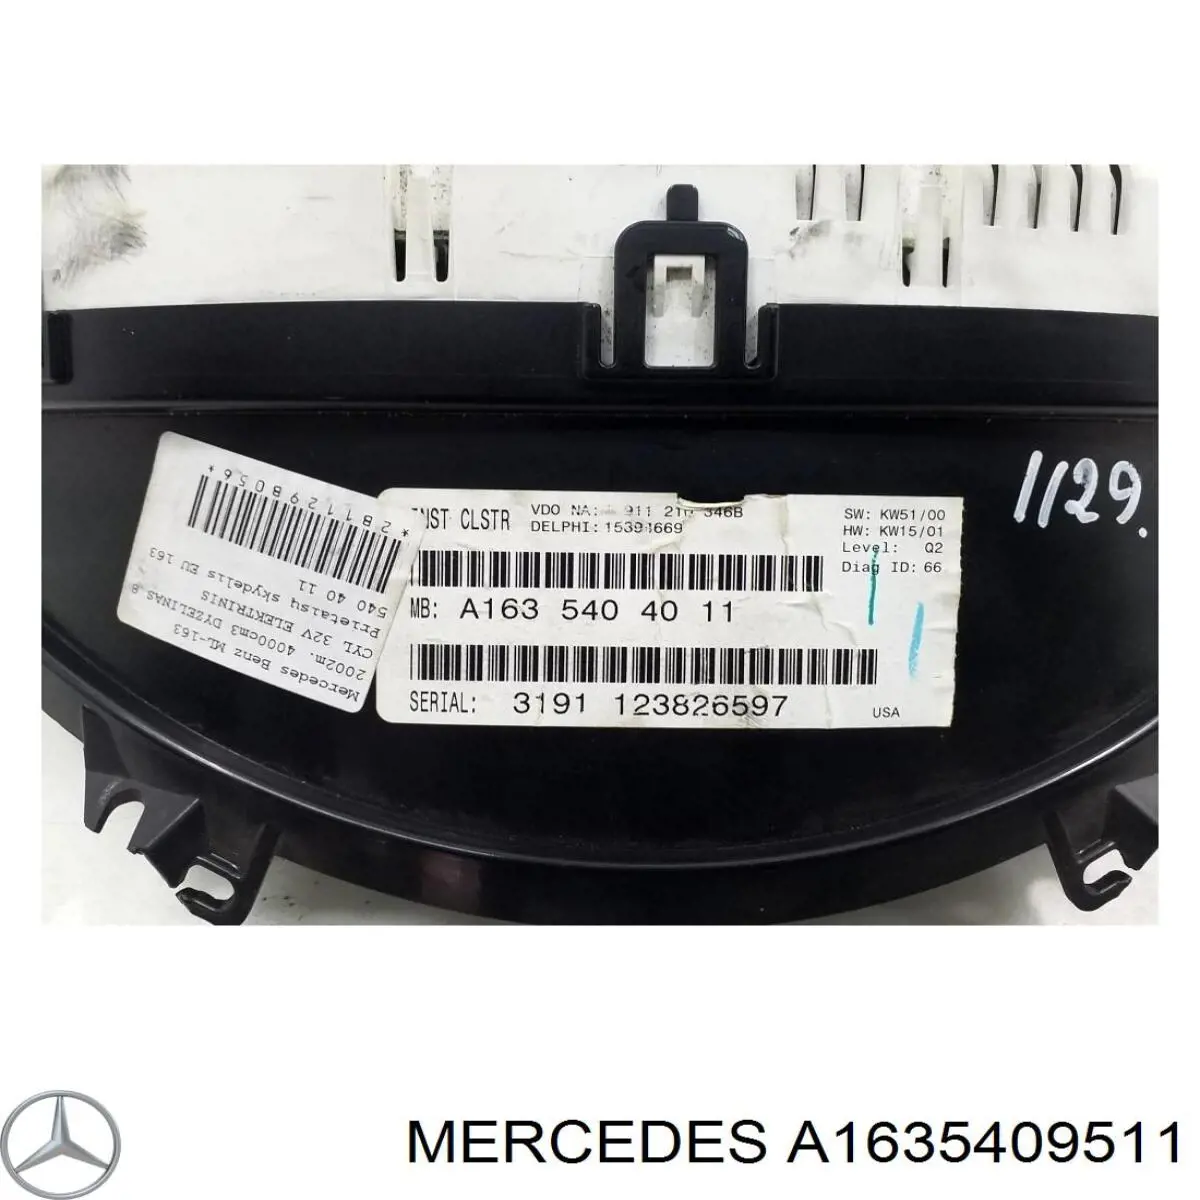 A1635409511 Mercedes tablero de instrumentos (panel de instrumentos)